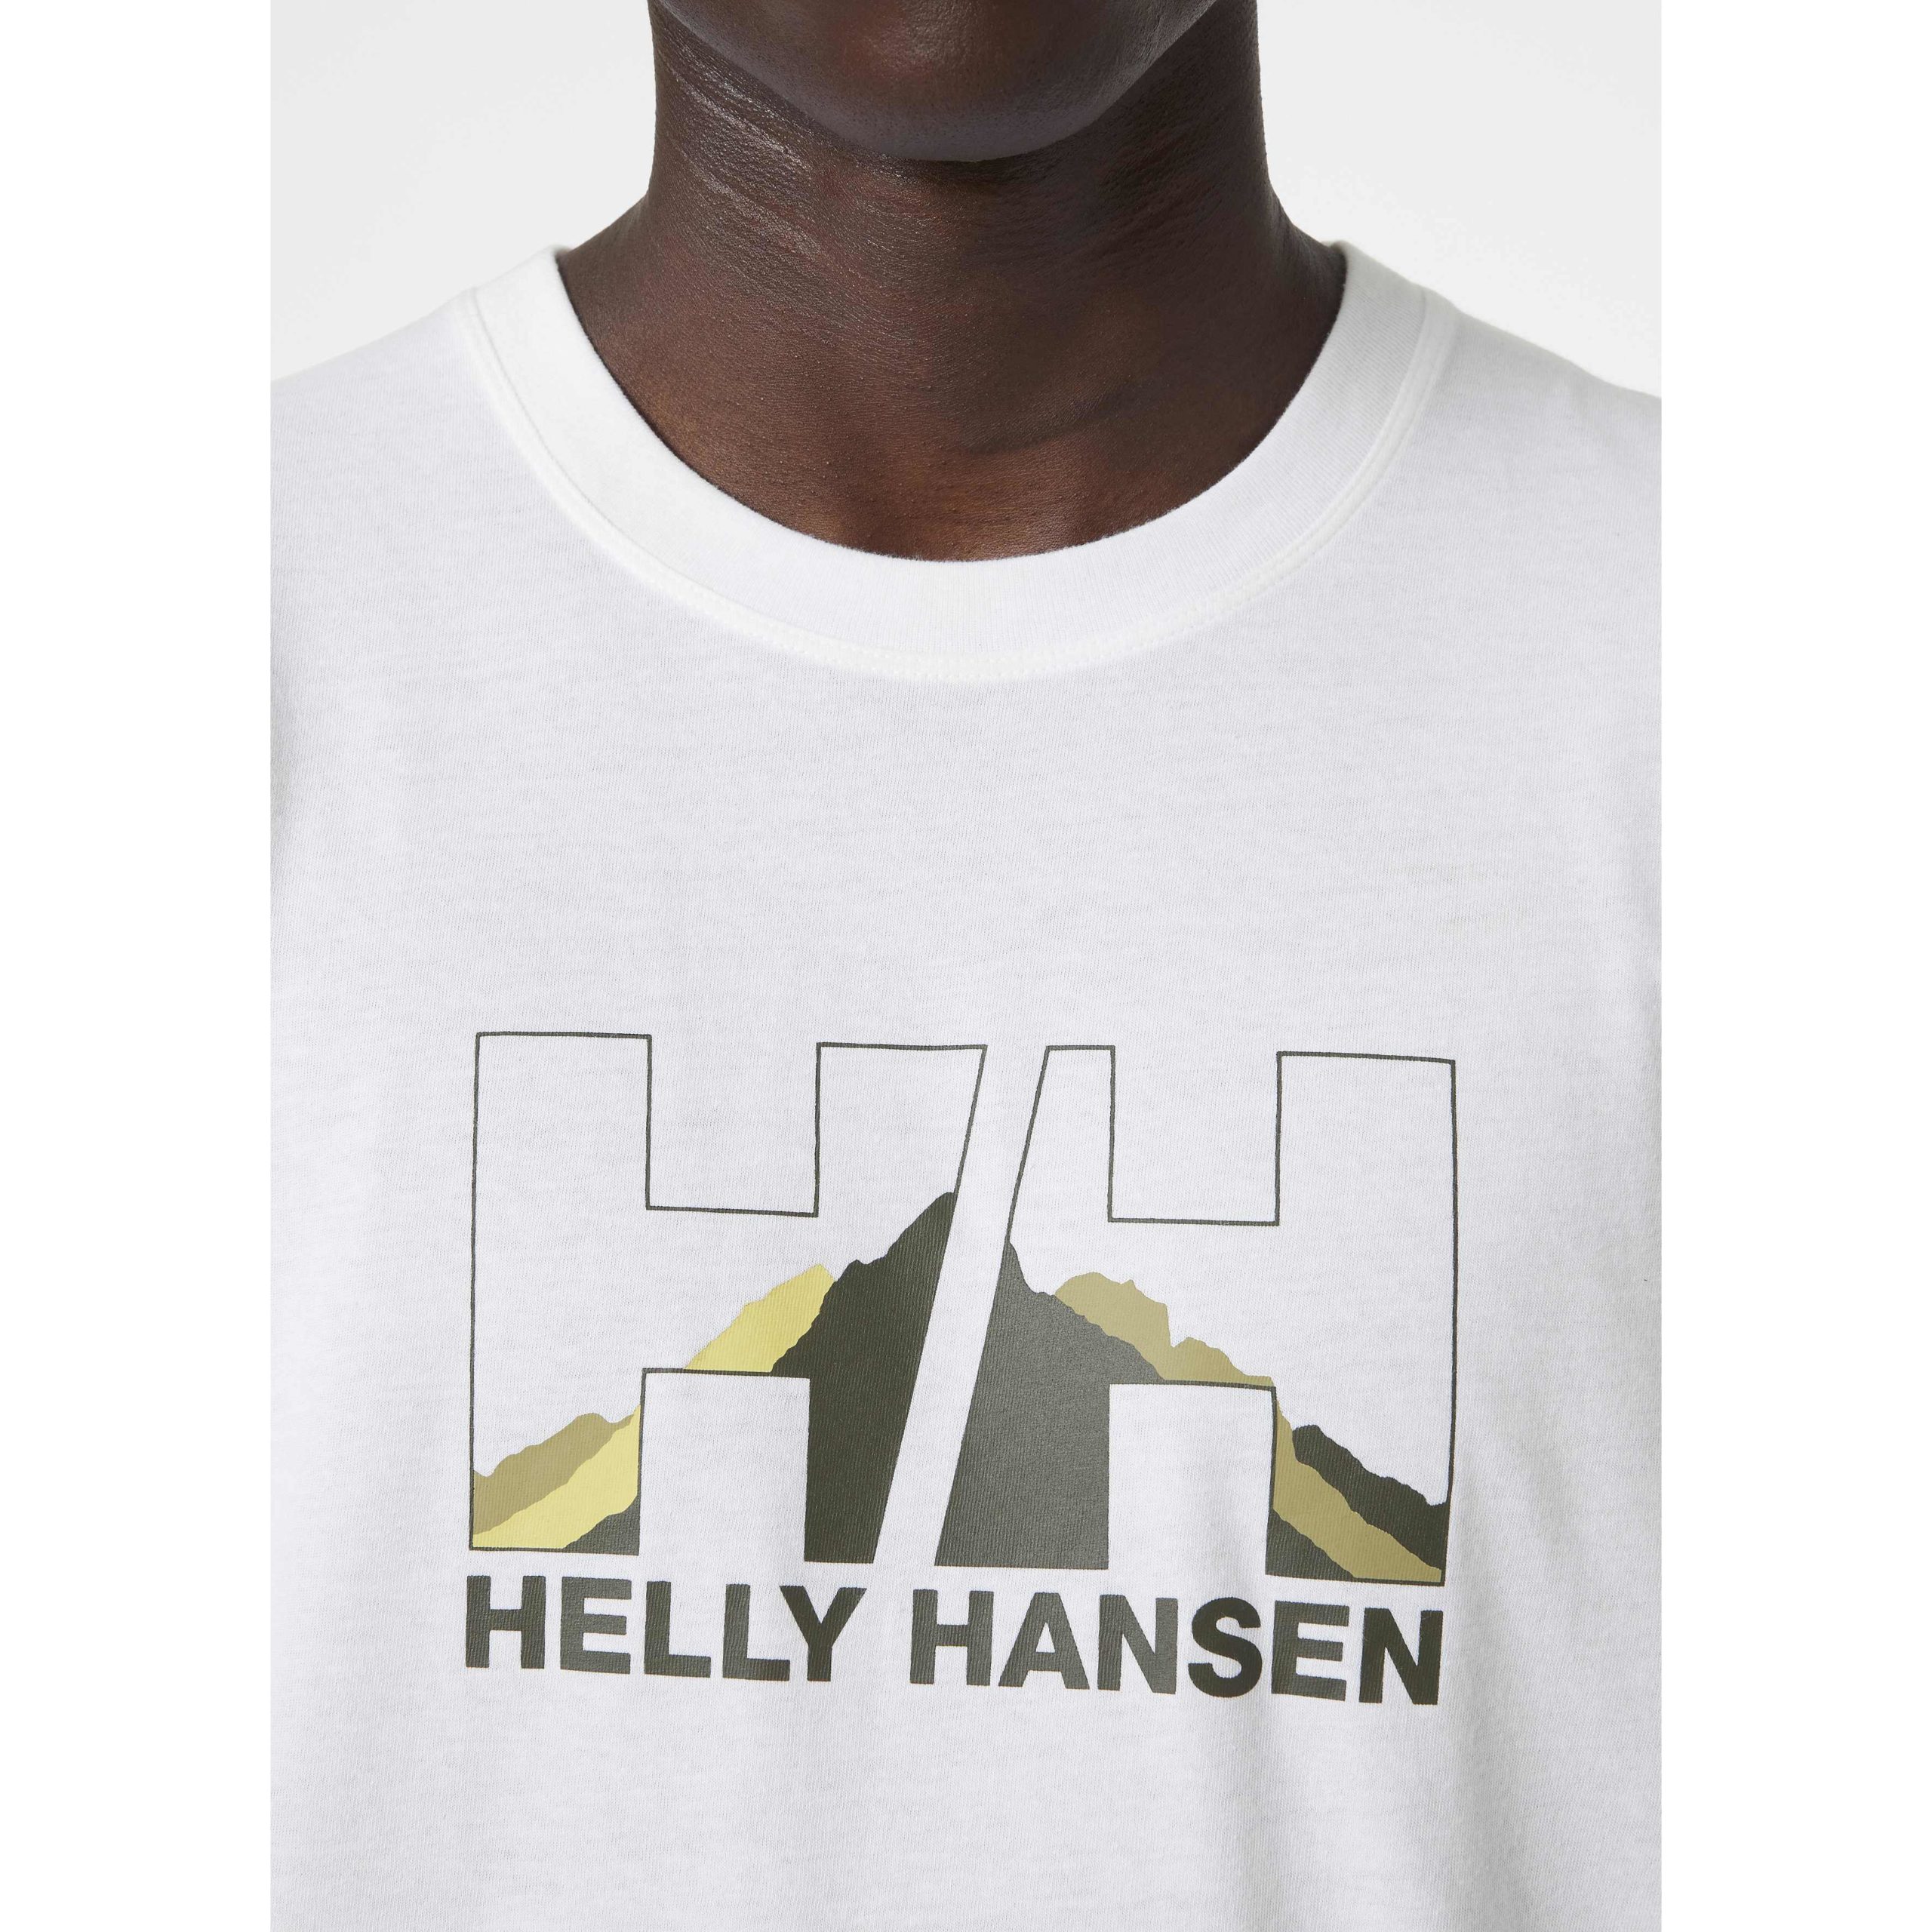 Helly-hansen Polera Para Hombre Nord Graphic Hh T Shirt, É